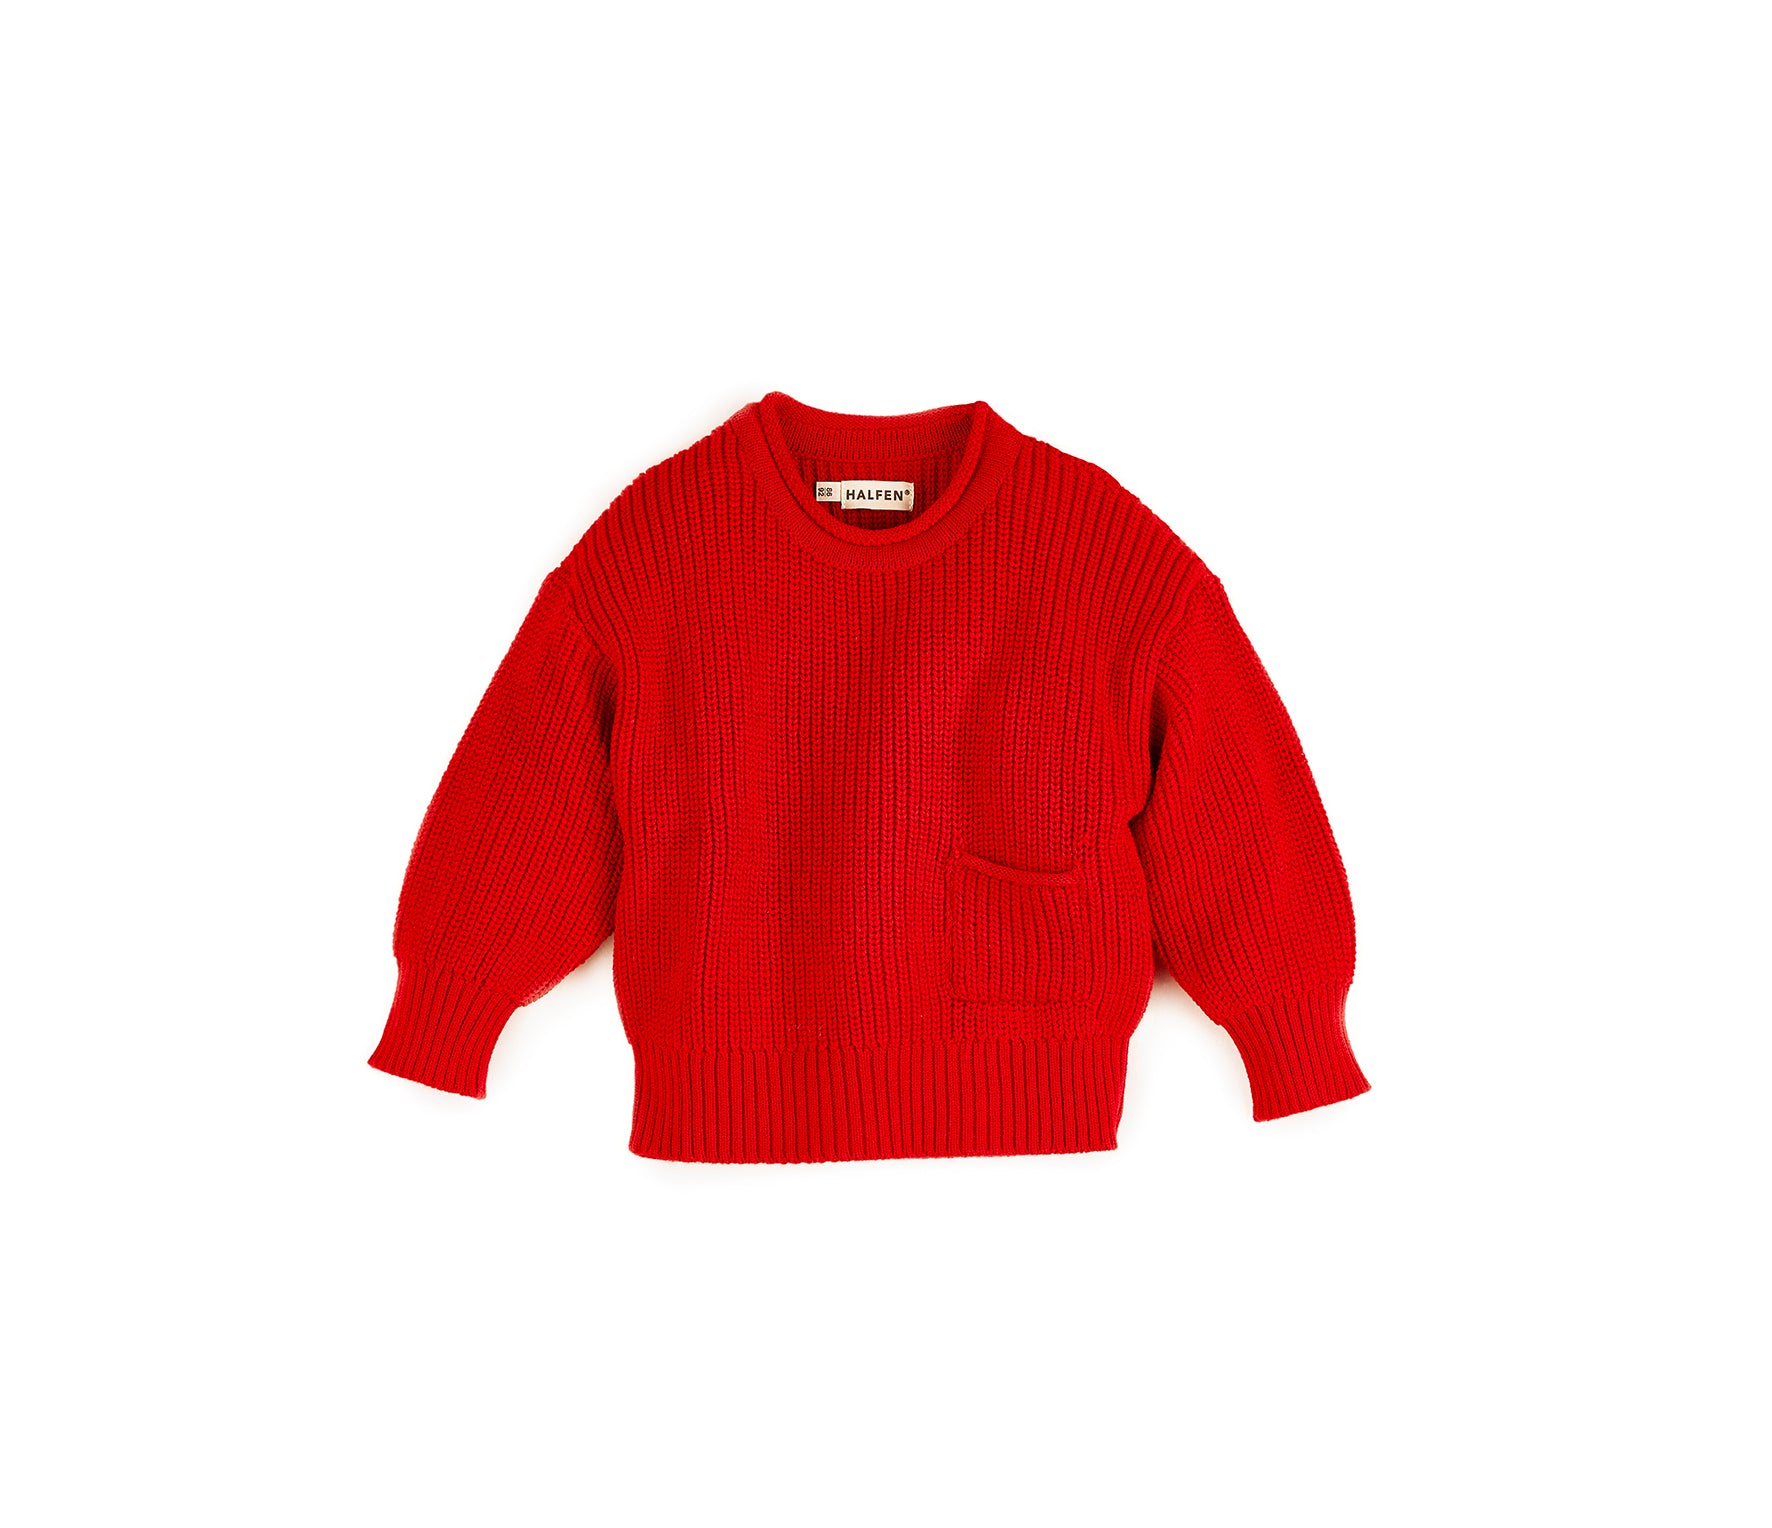 Grobstrick Sweater mit Tasche